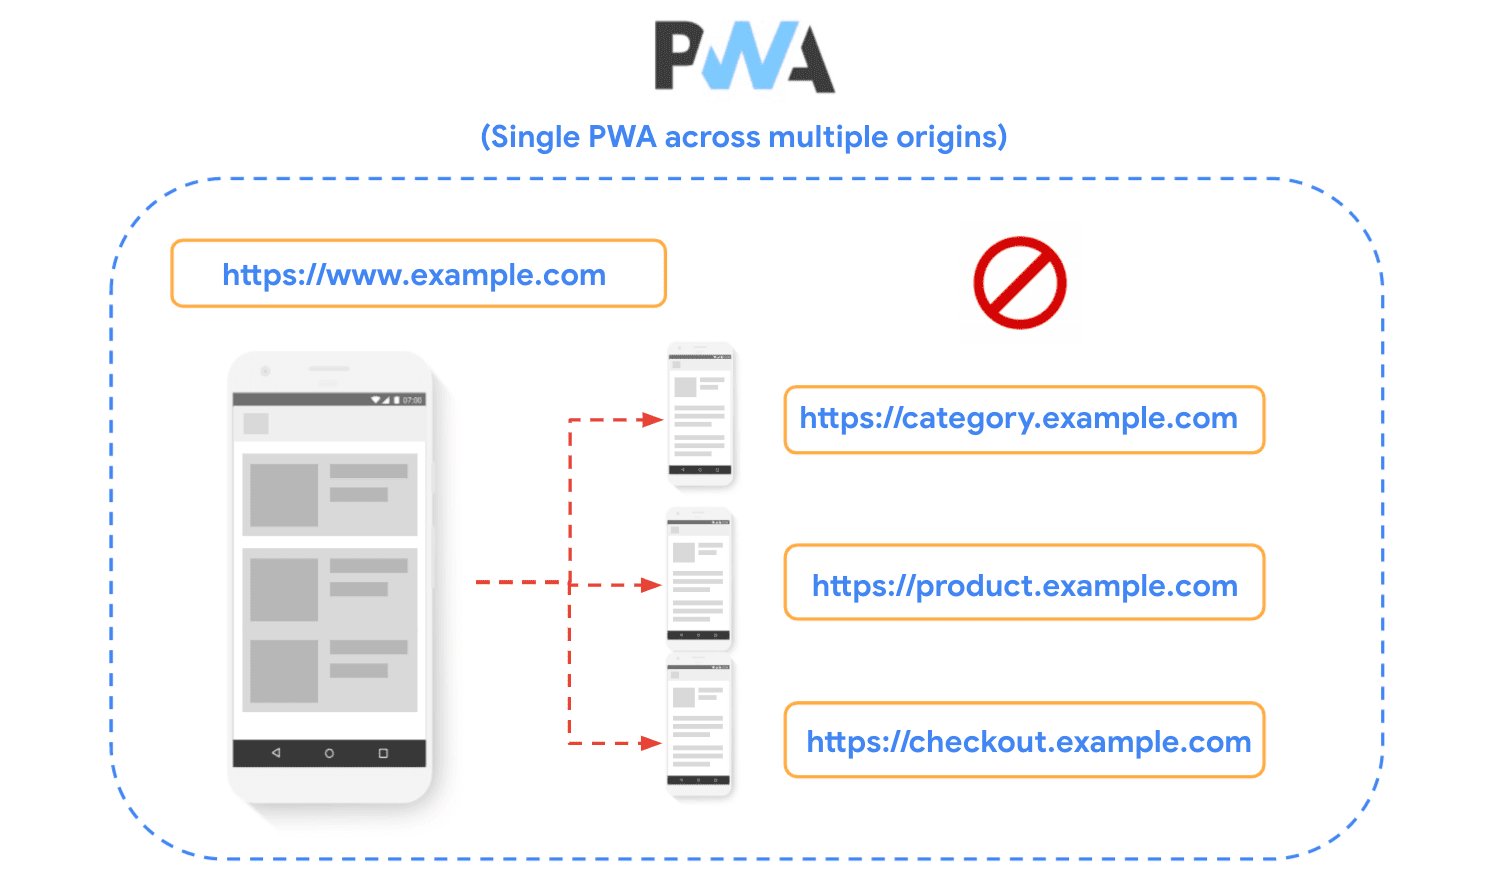 תרשים שמראה אתר שמחולק לכמה מקורות, ומוכיח שהשיטה הזו לא מומלצת כשבונים אפליקציות PWA.